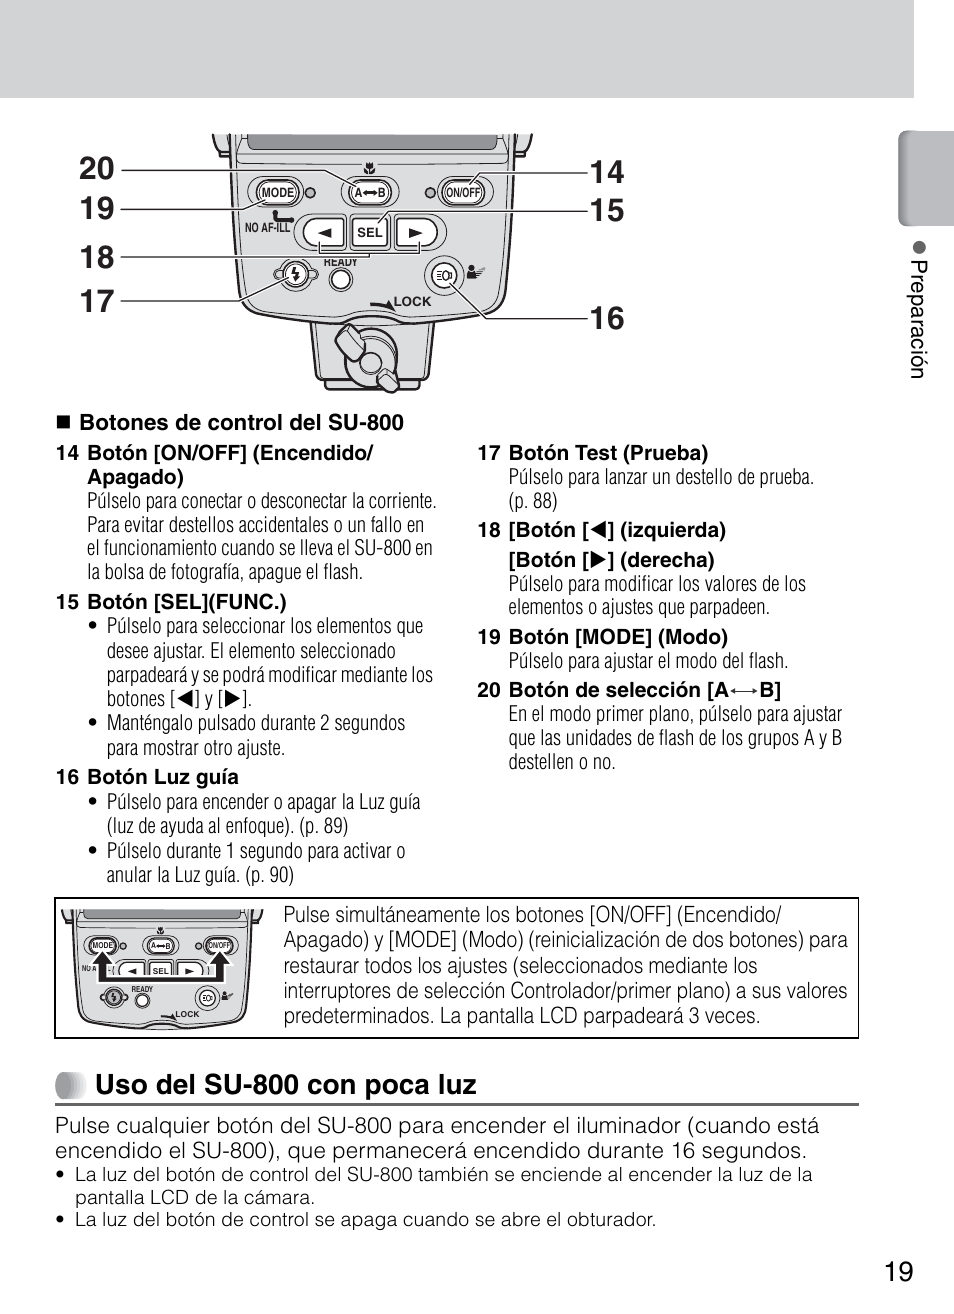 Uso del su-800 con poca luz | Nikon HO98751 Manual del usuario | Página 21 / 136